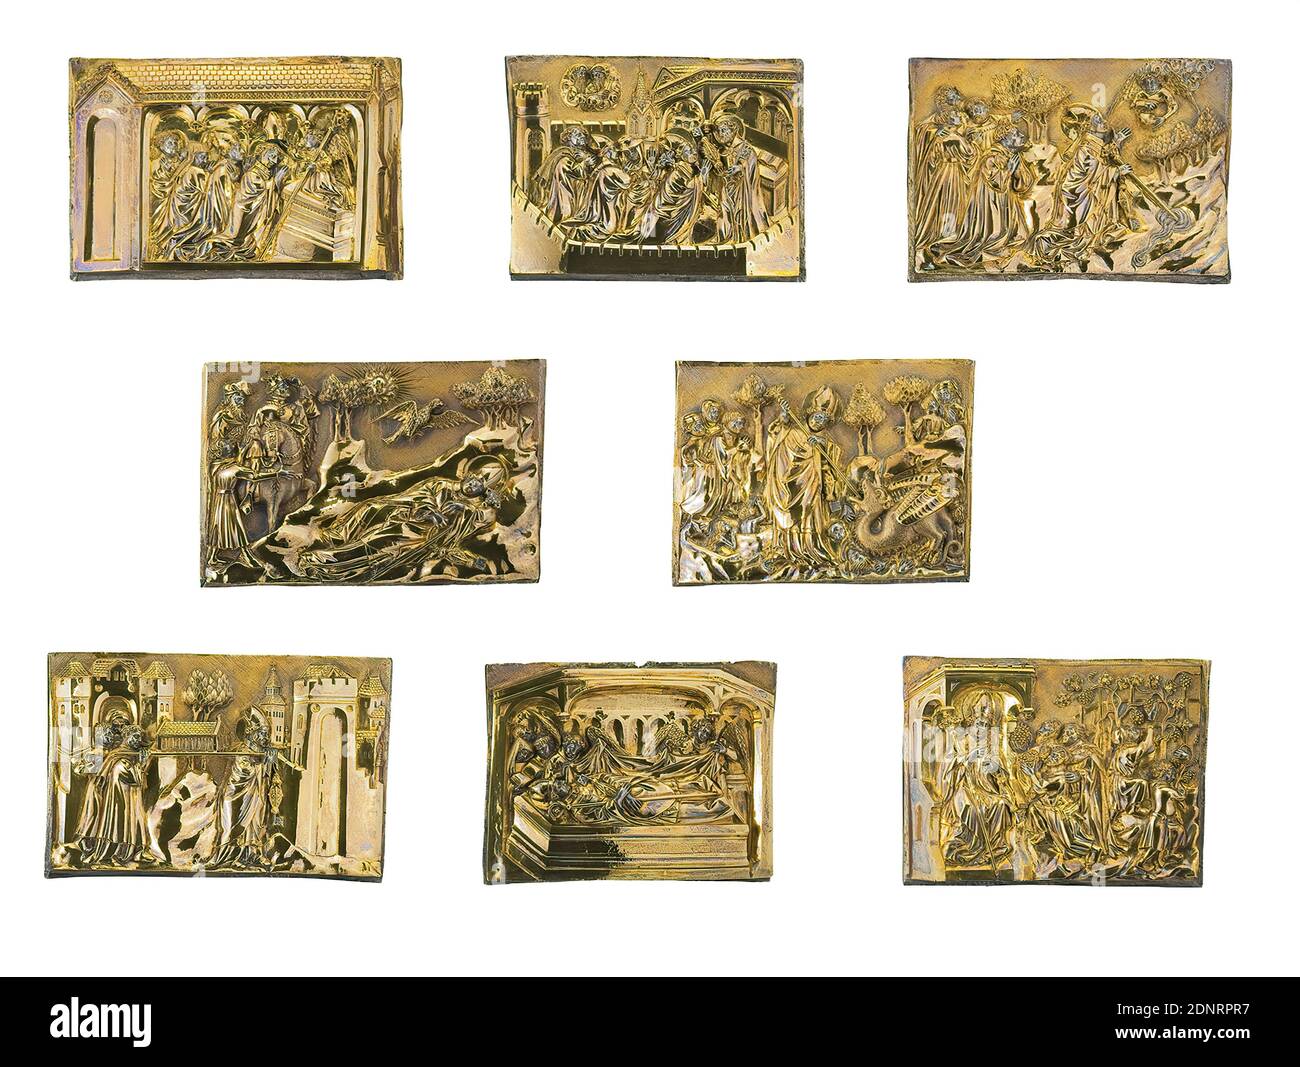 Plaques Servatius, argent, doré, objet (par plaque): Hauteur: 10.7 cm; largeur: 13.8 cm; profondeur: 2,5 cm, œuvres d'art / arts appliqués et beaux-arts, reliquaires, travail d'or / argentmith, équipement de l'église, Saints, art médiéval, par gratitude pour une guérison le duc Heinrich de Bavière (1386-1450) a fait don d'un buste reliquaire à l'église Servatius de Maastricht en 1403. Il montre Saint Servatius, qui est mort en 384 comme évêque de Tongern. Les huit plaques de relief dorées en argent ornent à l'origine la base octogonale du buste, qui n'est plus préservée. Avec un grand plaisir narratif et une précision réaliste Banque D'Images